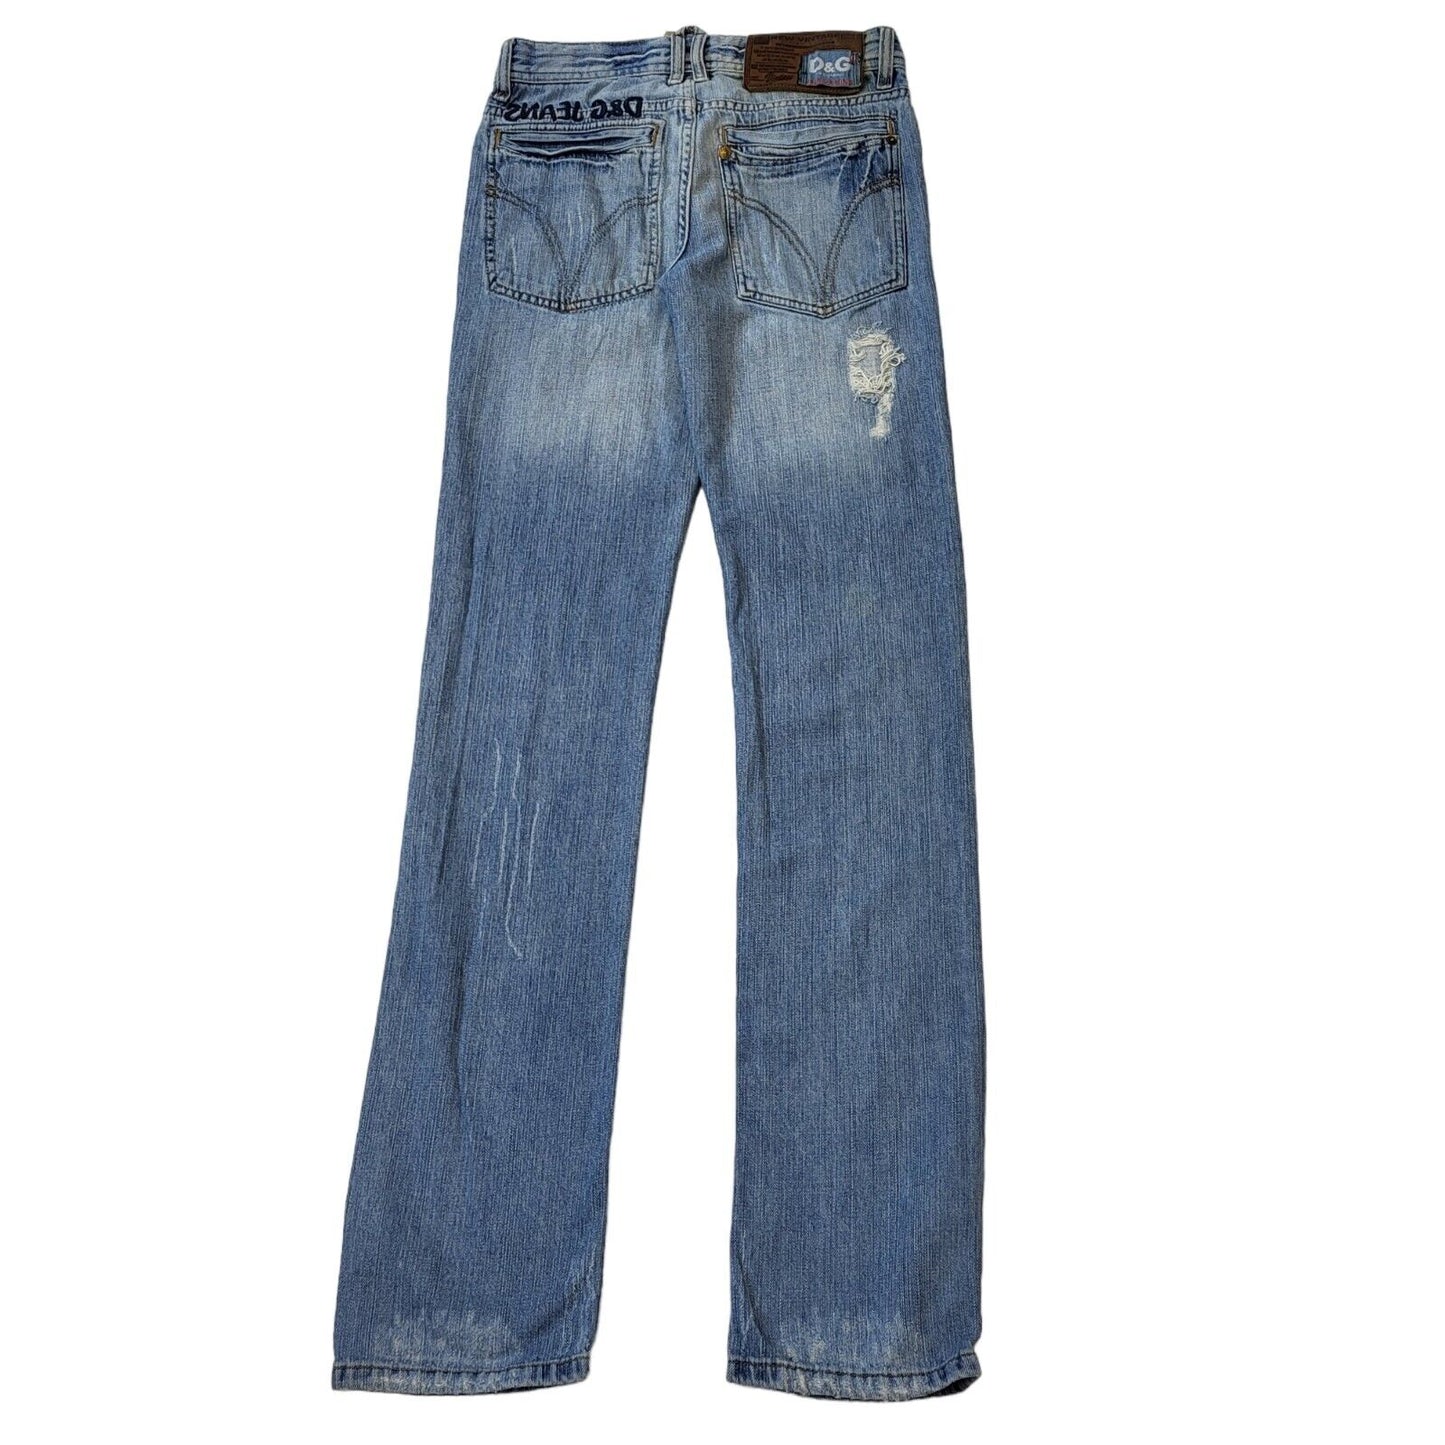 D&G Jeans (S)